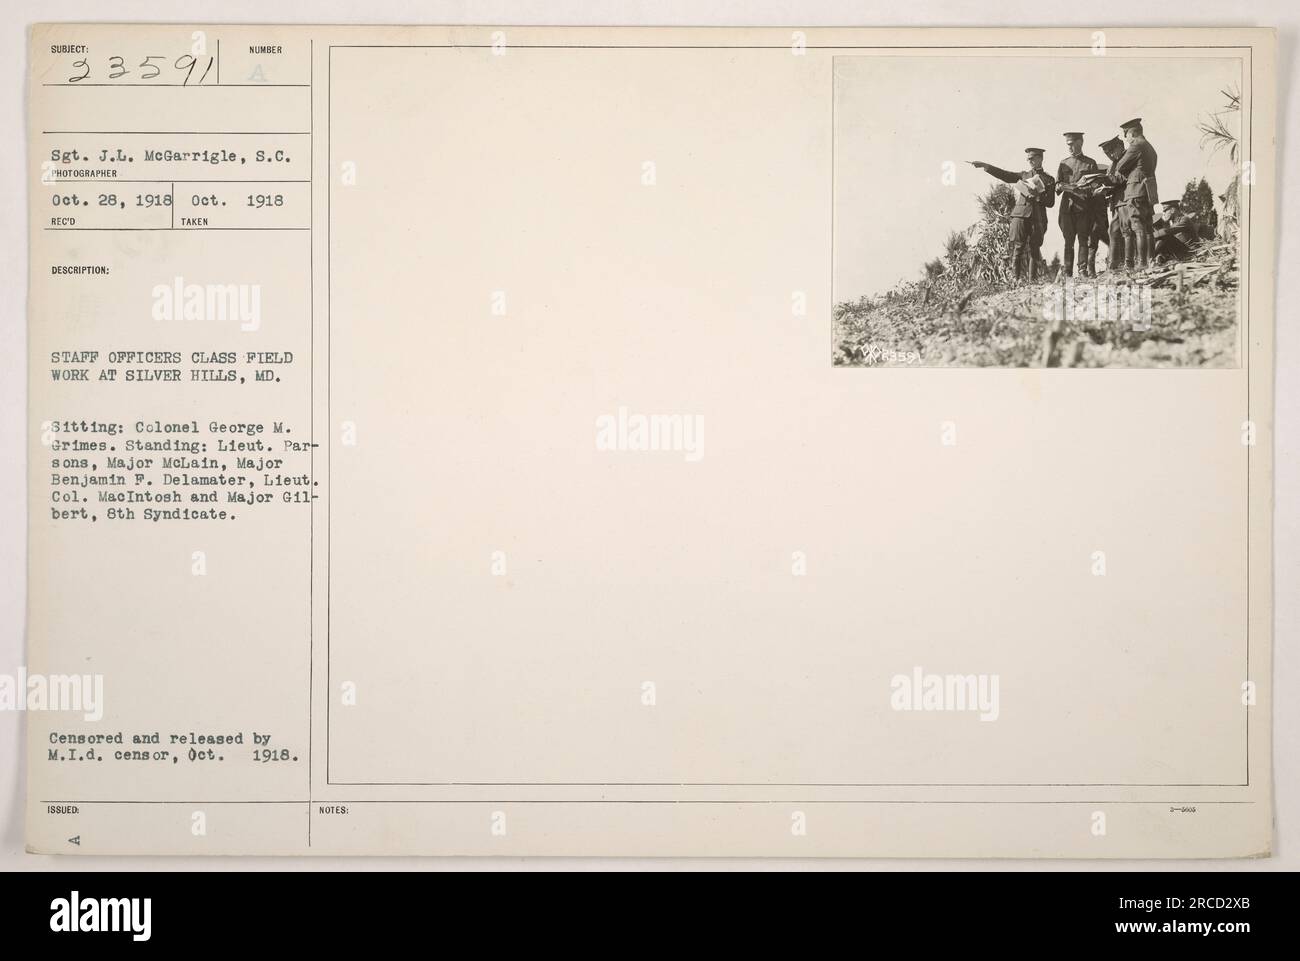 Sgt. J.L. McGarrigle scattò una fotografia (111-SC-23591 33591) il 28 ottobre 1918, durante un lavoro sul campo di classe degli ufficiali dello staff a Silver Hills, MD. Gli individui presenti nell'immagine sono il colonnello George M. Grimes (seduto) e Lieut. Parsons, maggiore McLain, maggiore Benjamin F. DeLamater, Lieut. Col. Macintosh e Major G11-bert (in piedi). La fotografia è stata censurata e pubblicata da M.I.D Censor nell'ottobre 1918. Foto Stock